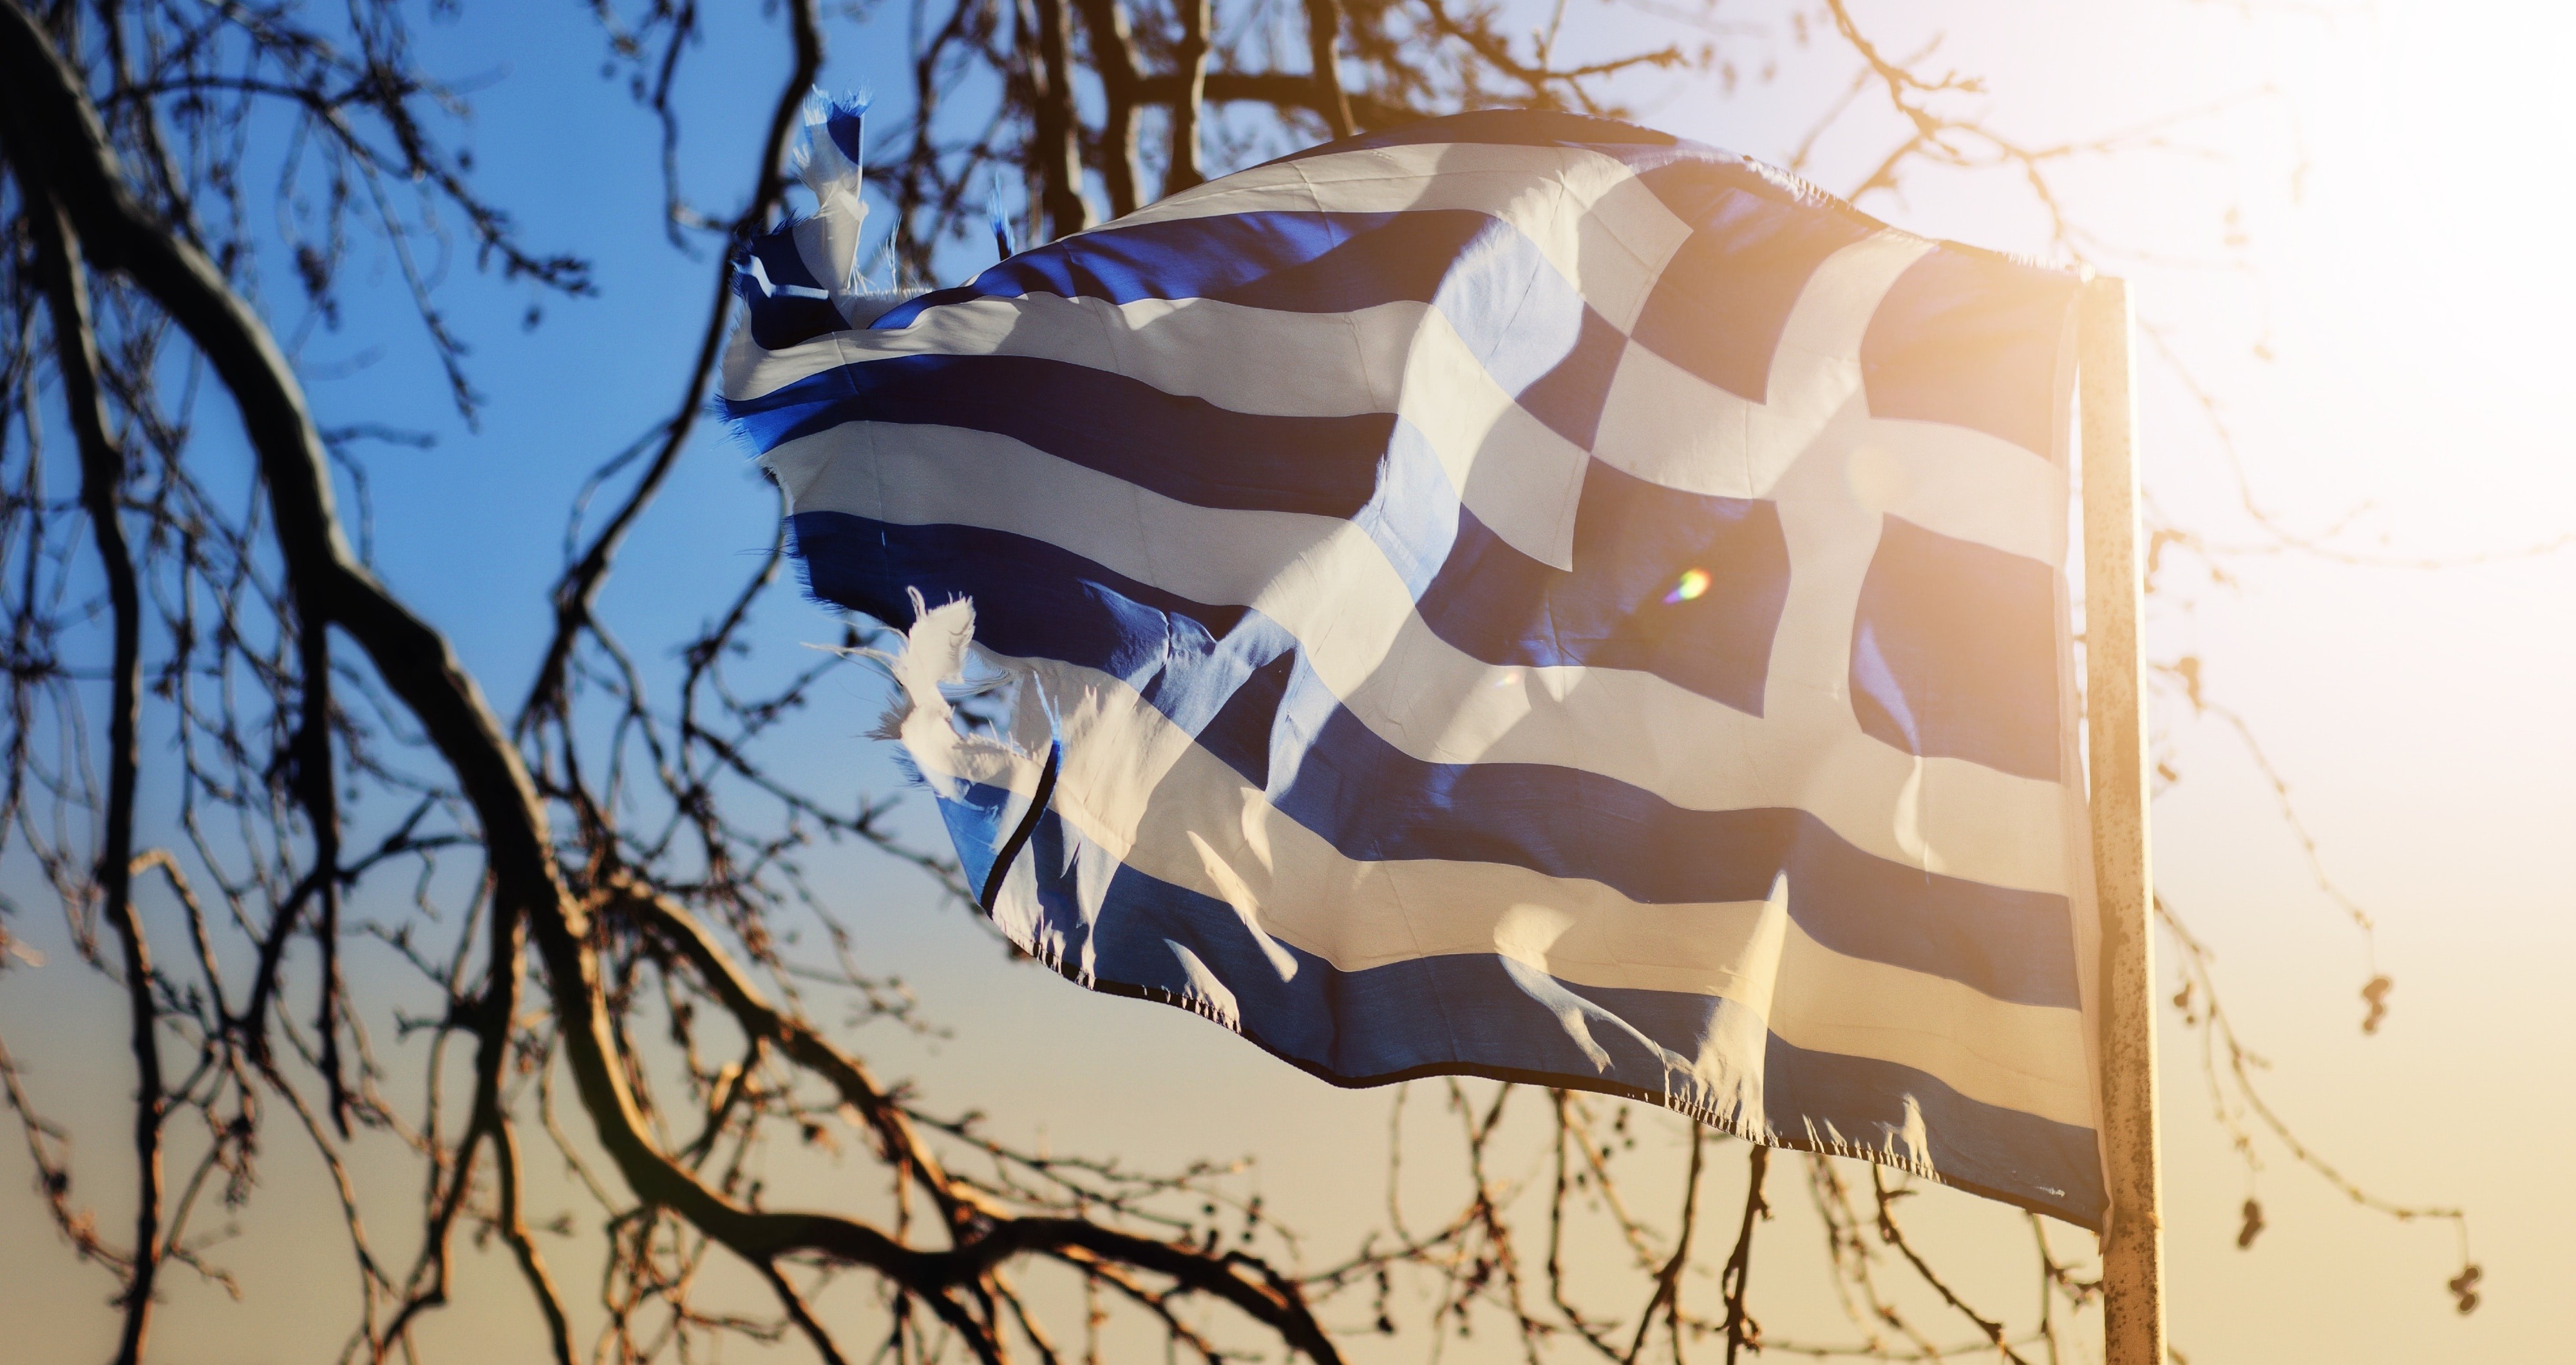 Ψήφος αποδήμων 2019: Ο ΣΥΡΙΖΑ “ζορίζει”, ‘κλειδί’ η πρόταση ΚΚΕ